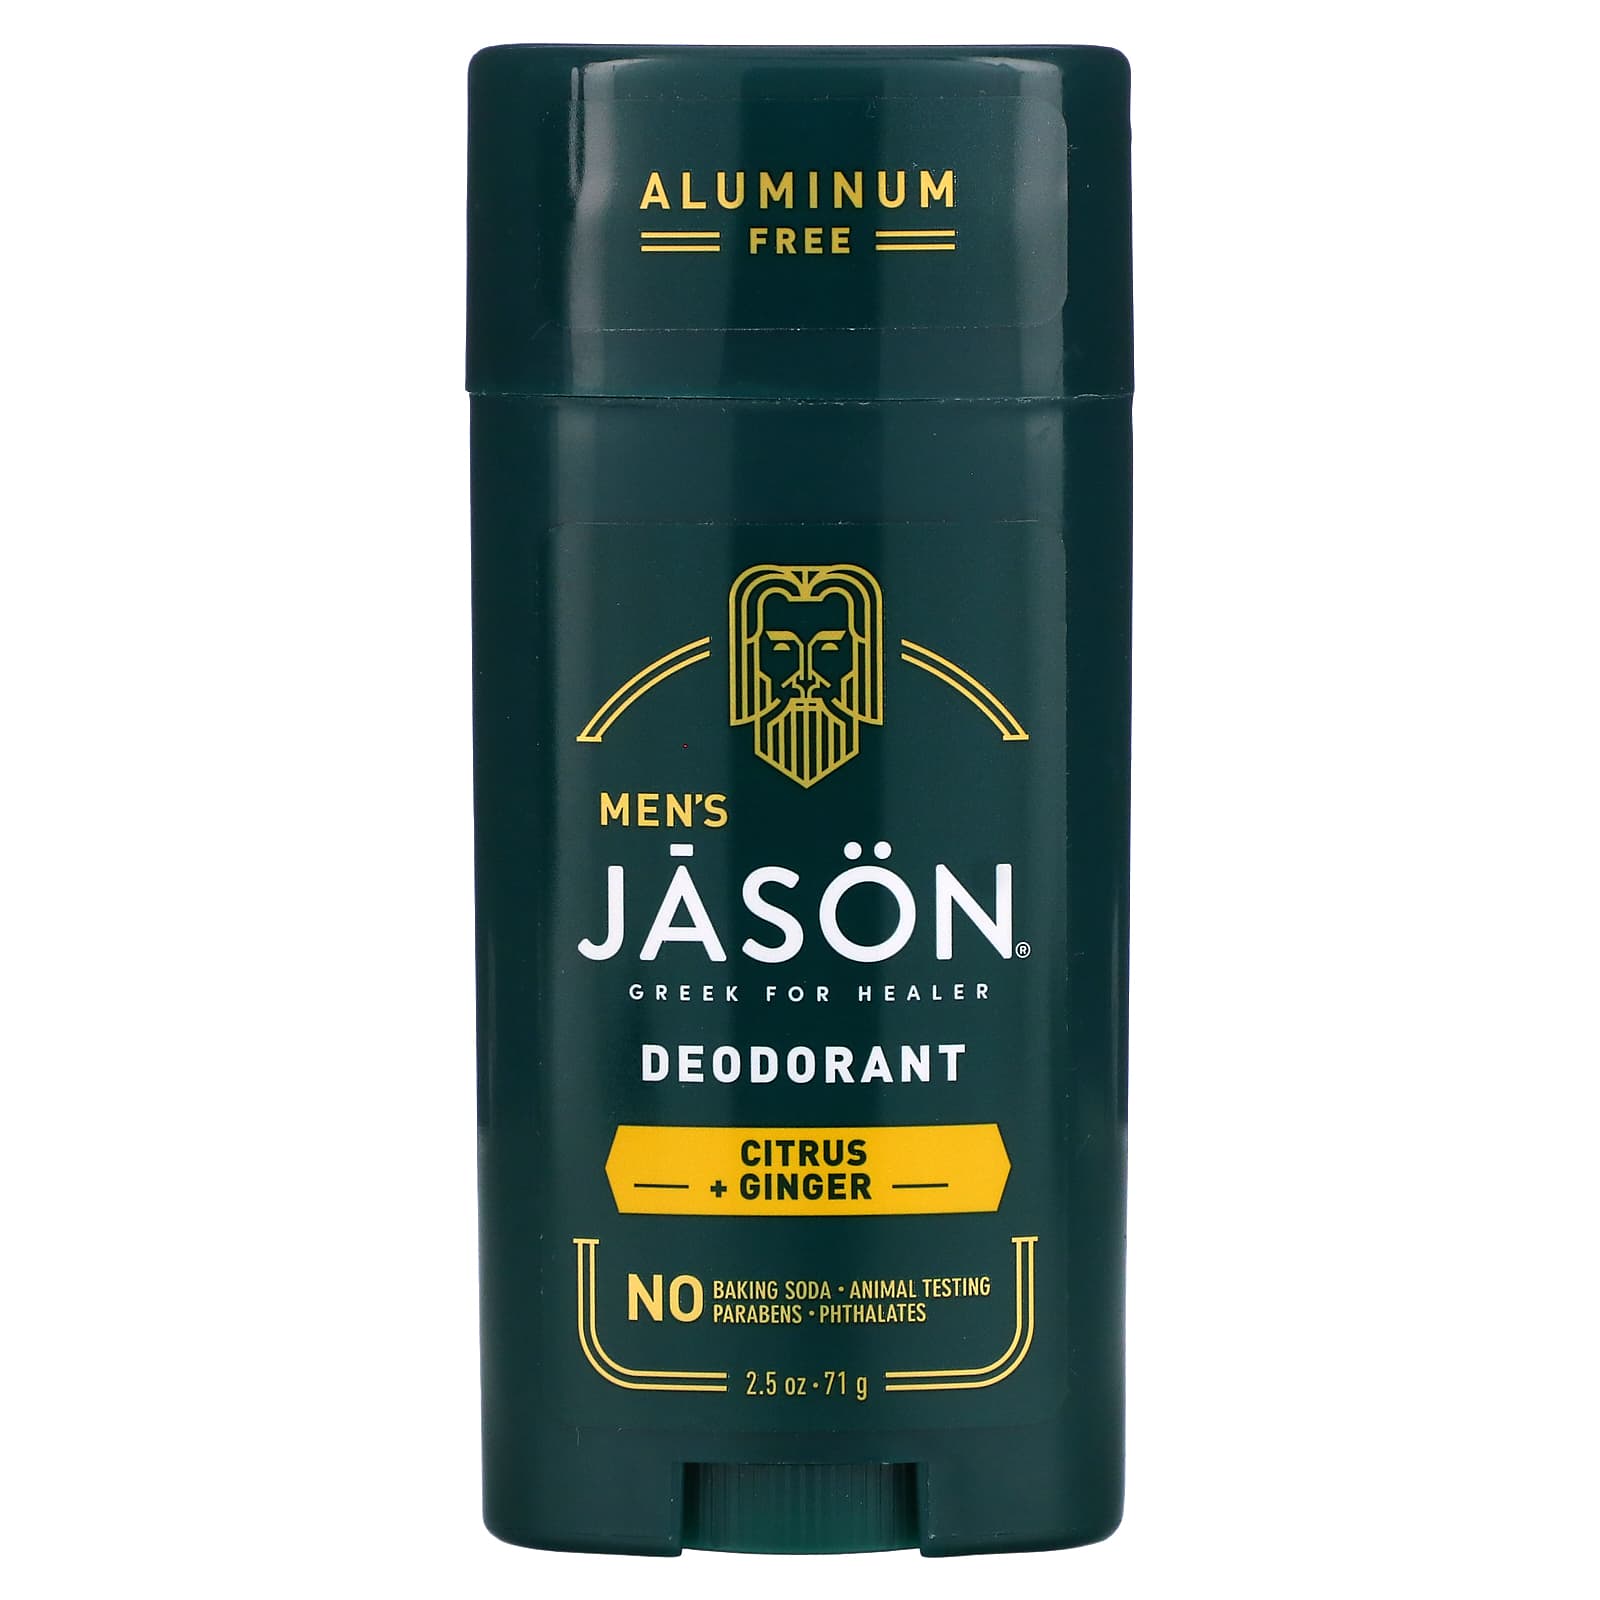 Дезодорант Jason Natural для мужчин, цитрус и имбирь, 71 г цена и фото